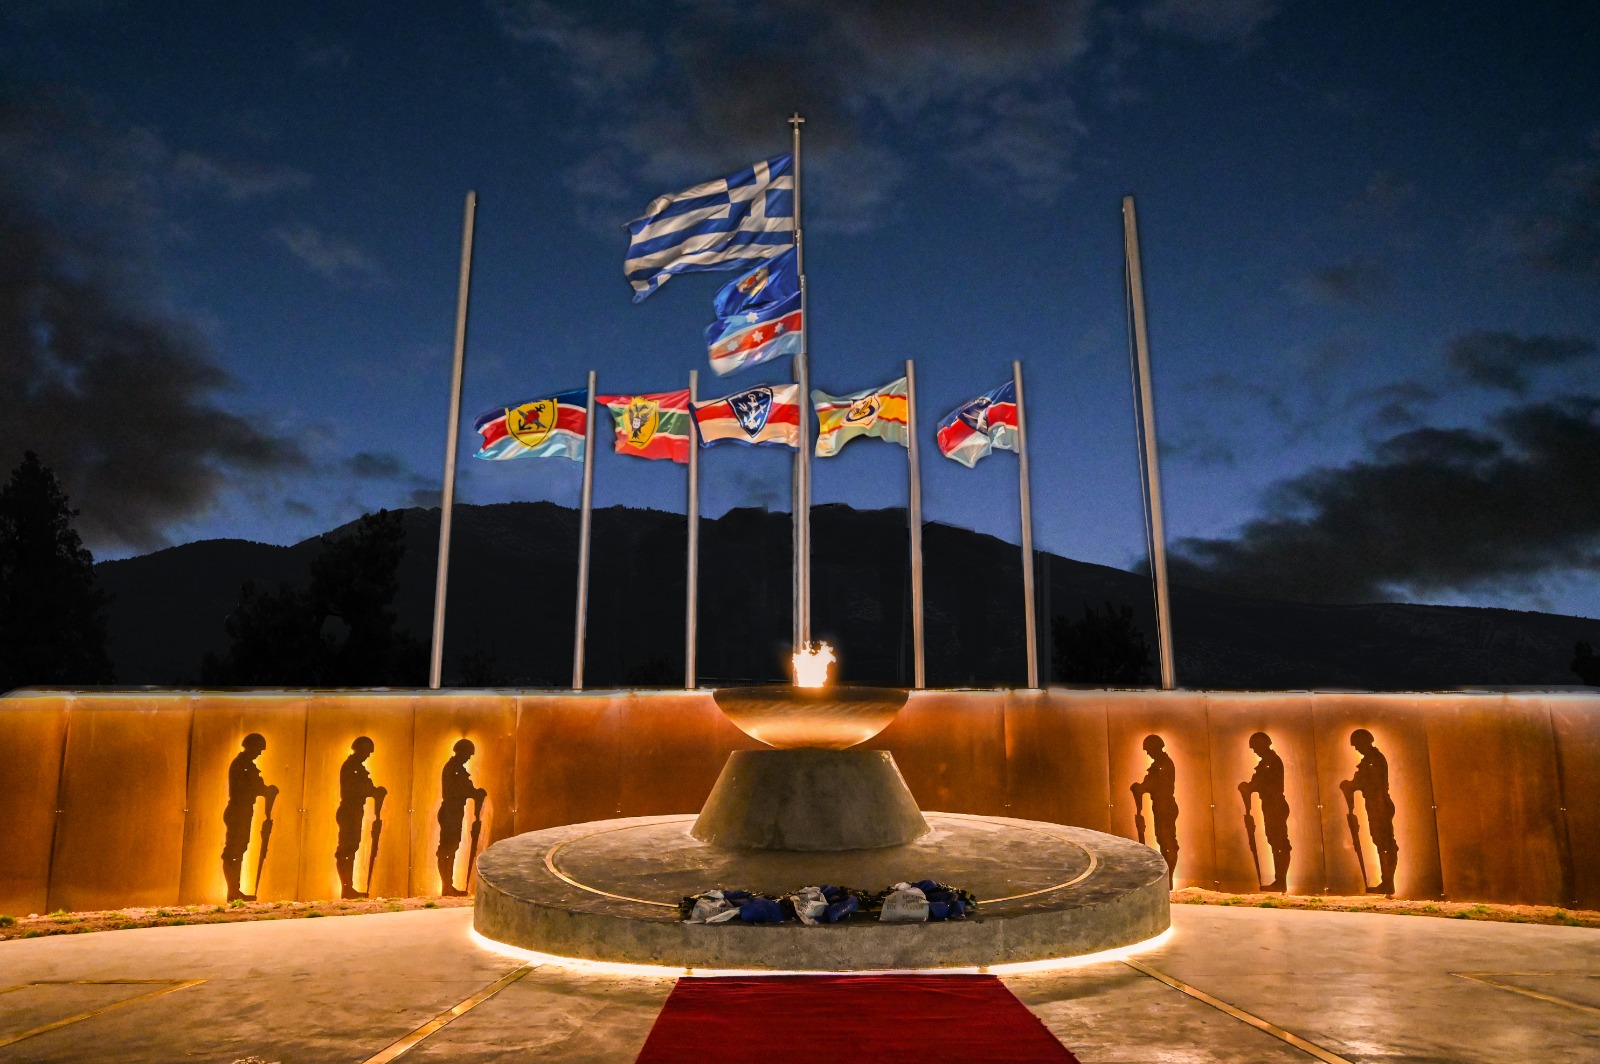 ΓΕΕΘΑ: Σύντομα επισκέψιμο στο κοινό το μνημείο των Αθανάτων του Έθνους